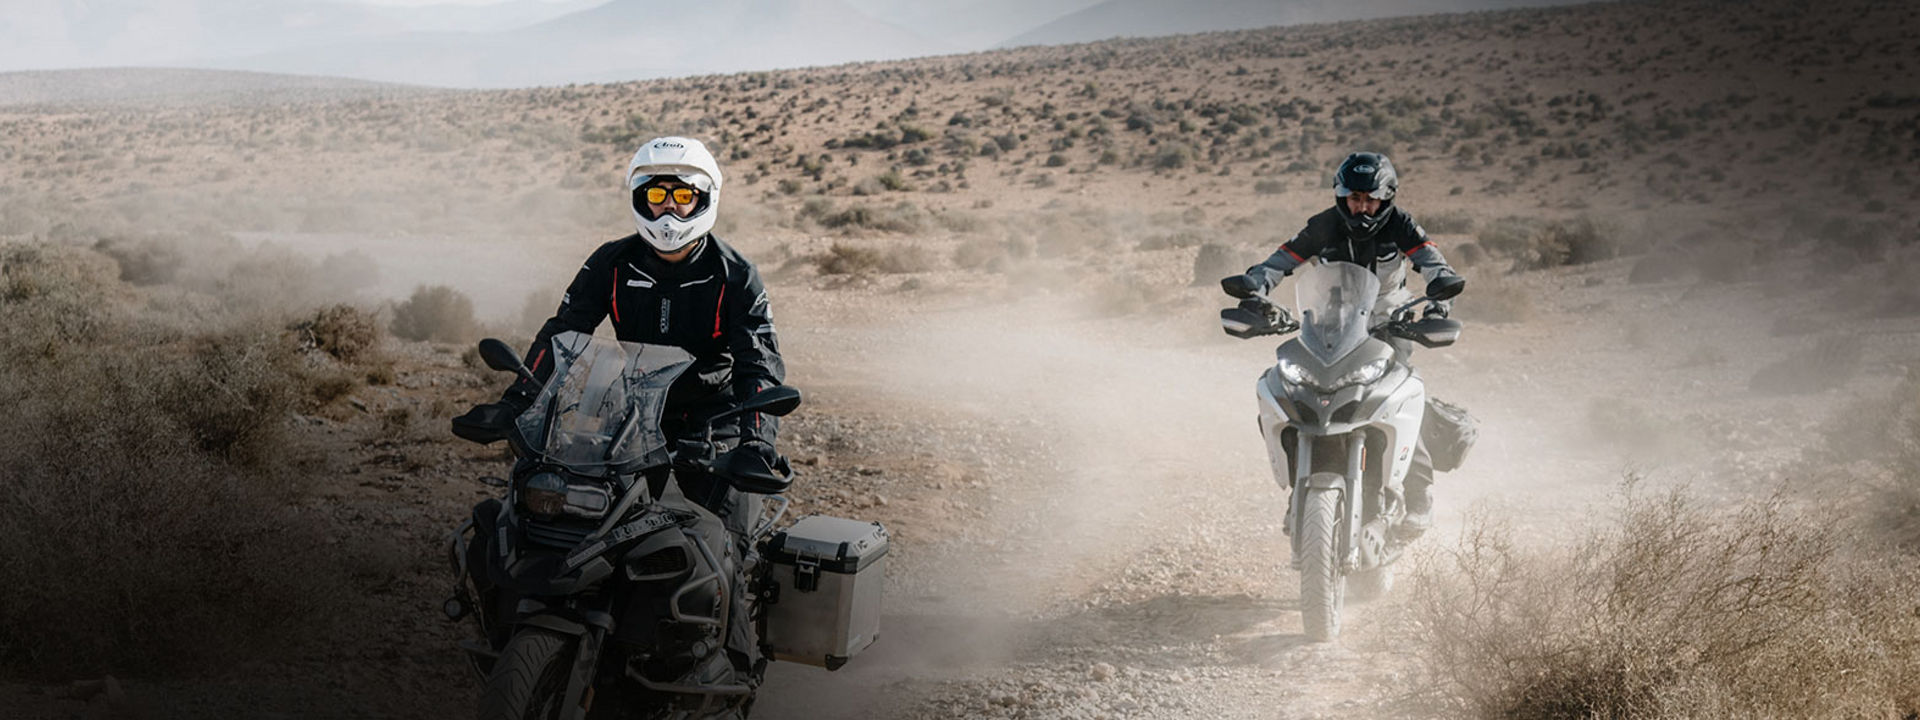 Kuvassa kaksi moottoripyöräilijää ajaa autiomaassa Bridgestonen Adventure-renkailla.